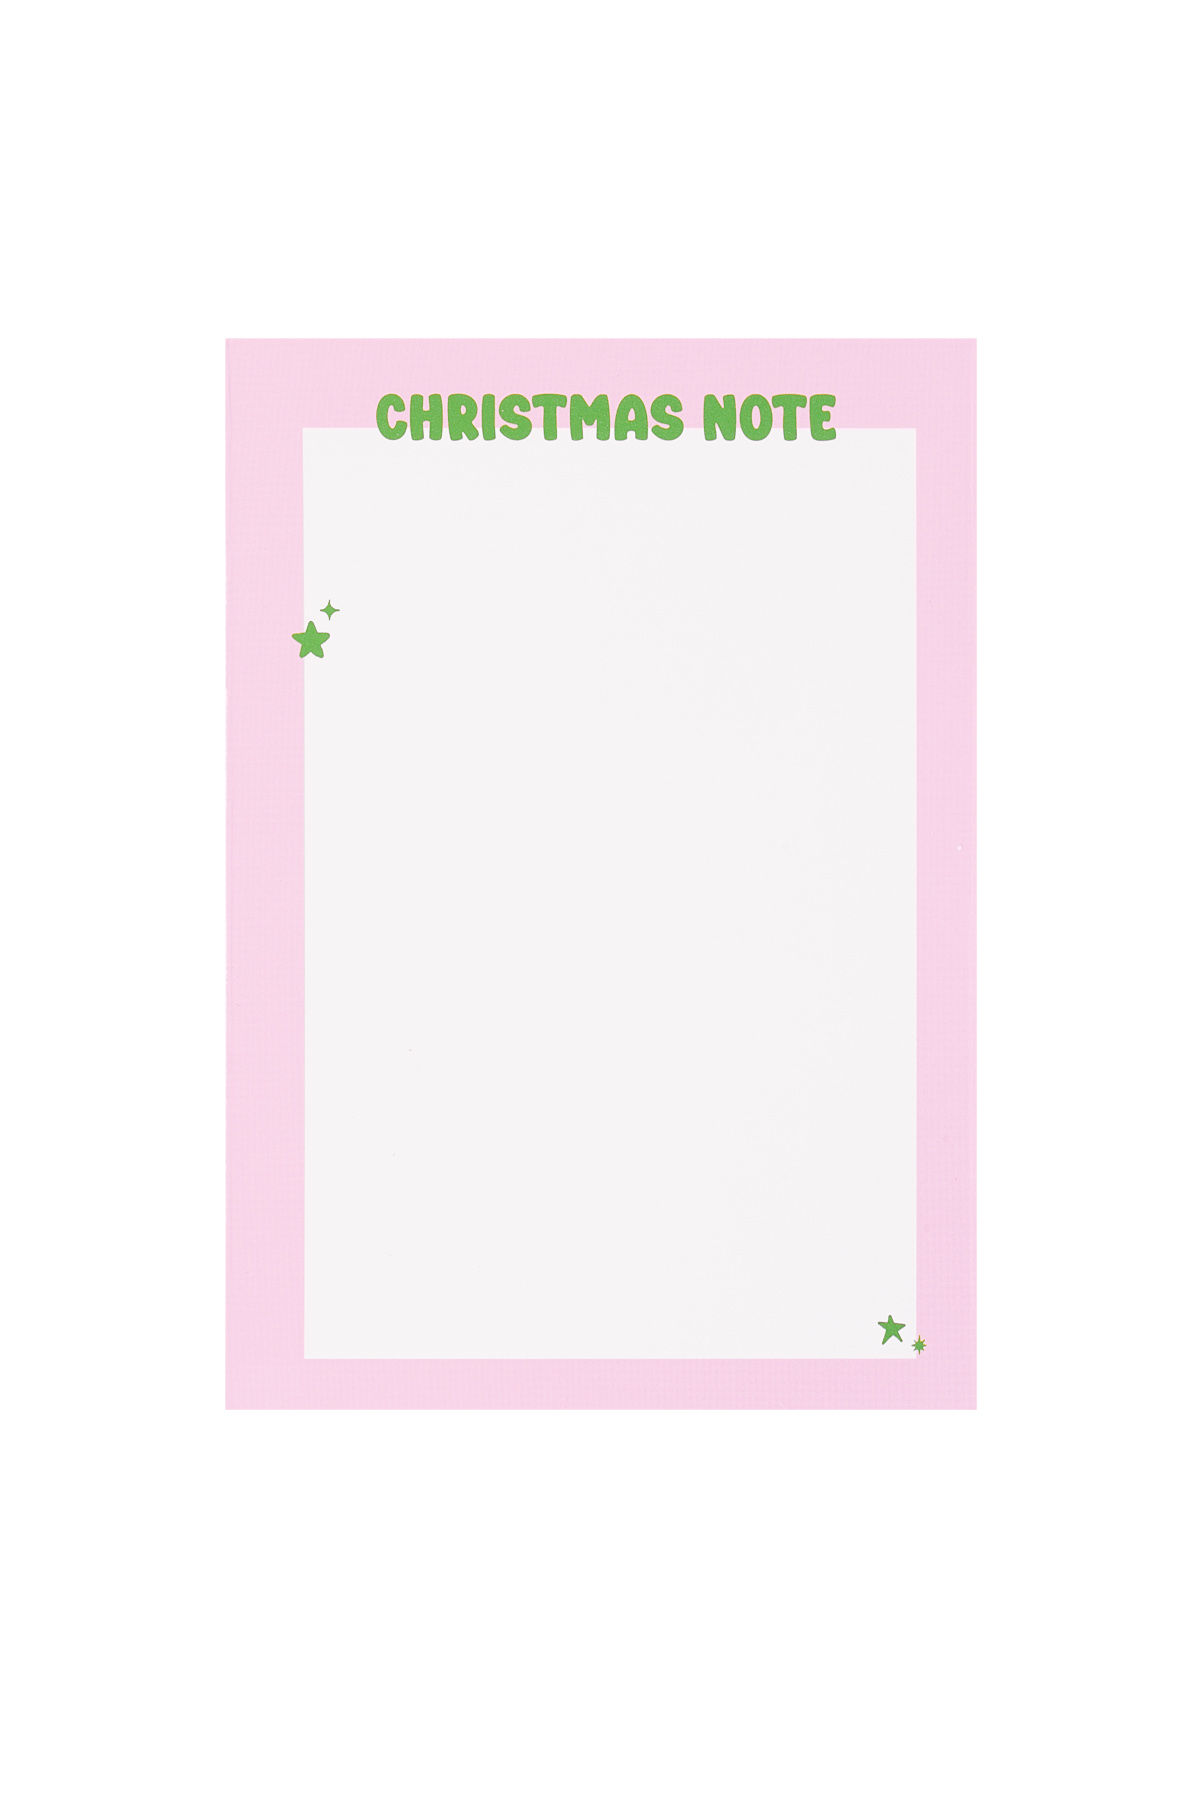 Carte de vœux de Noël qui ressemble un peu à Noël - rose Image2